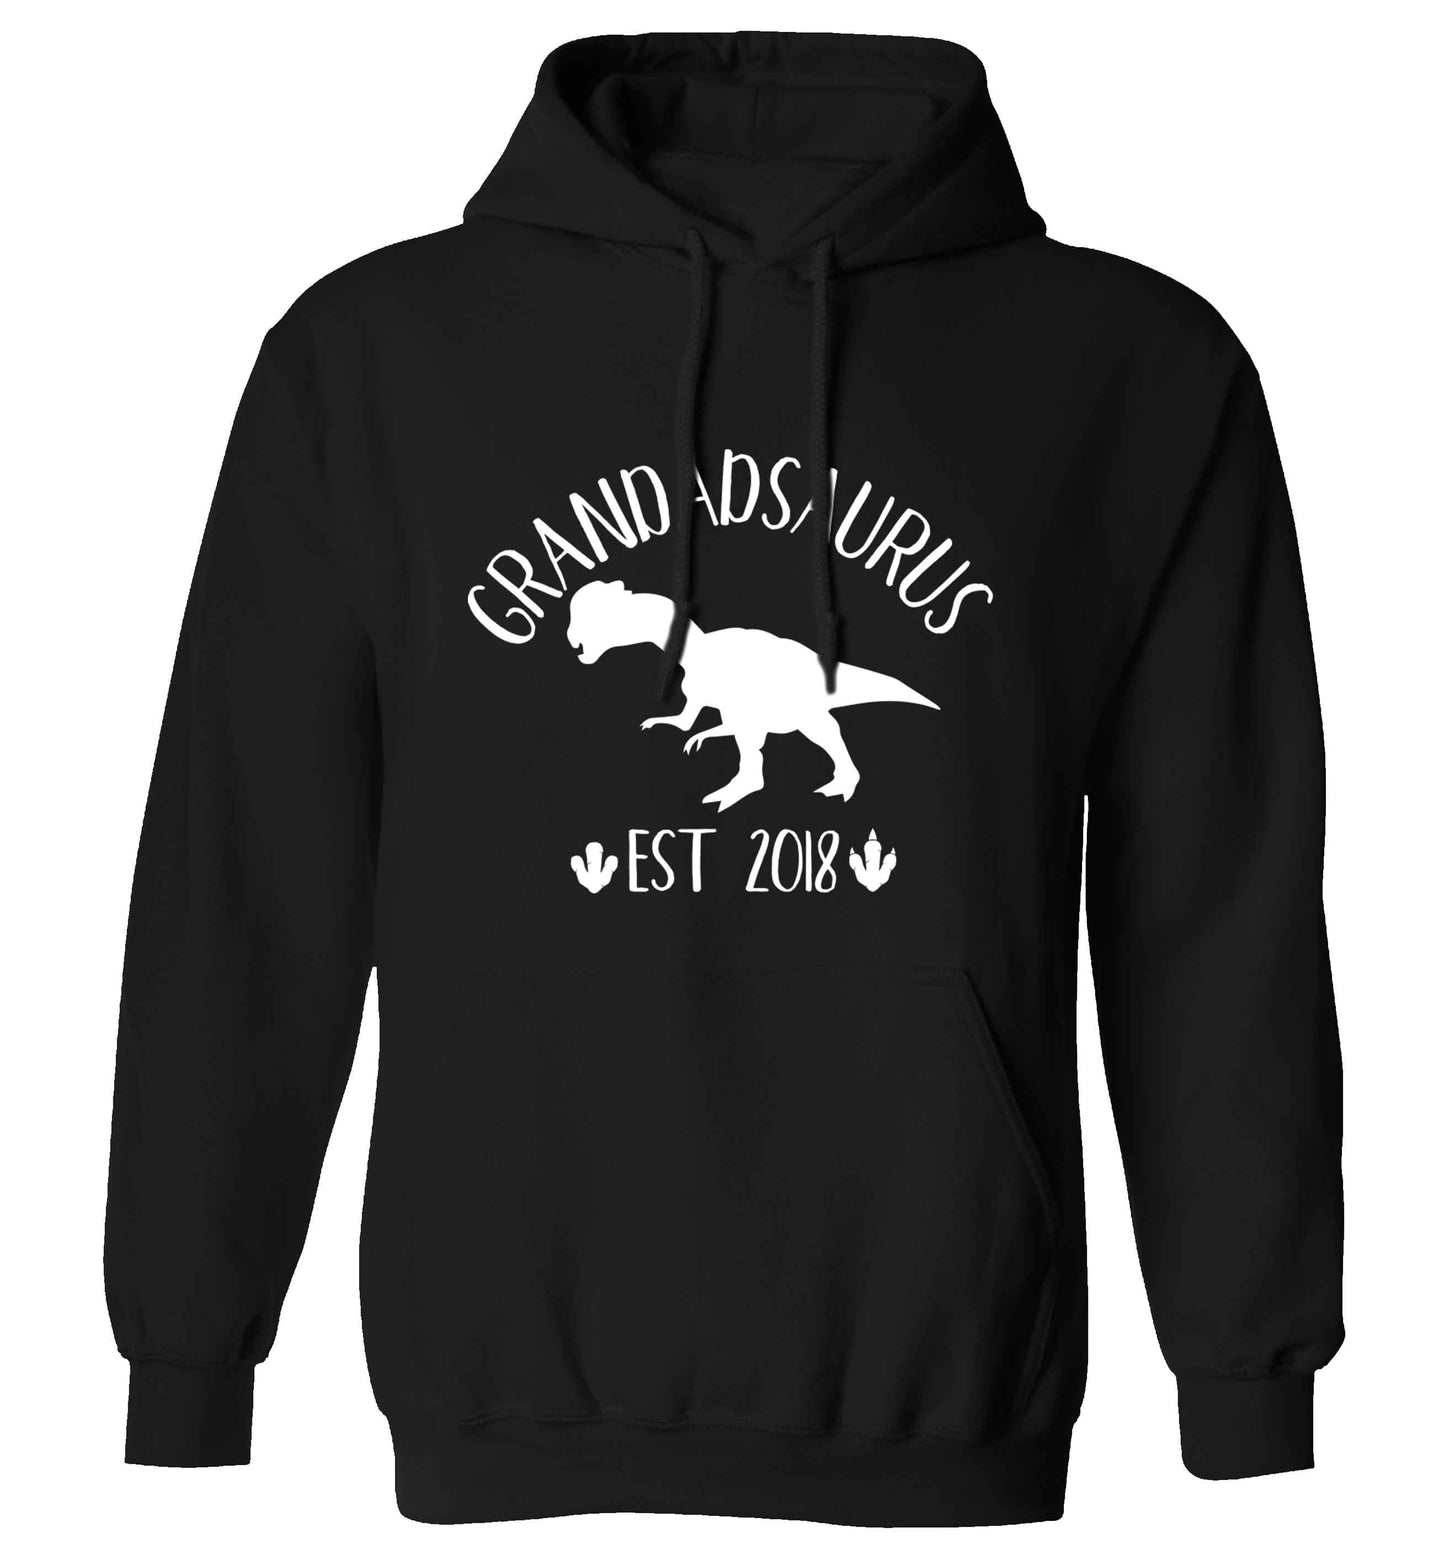 Personalised grandadsaurus since (custom date) adults unisex black hoodie 2XL